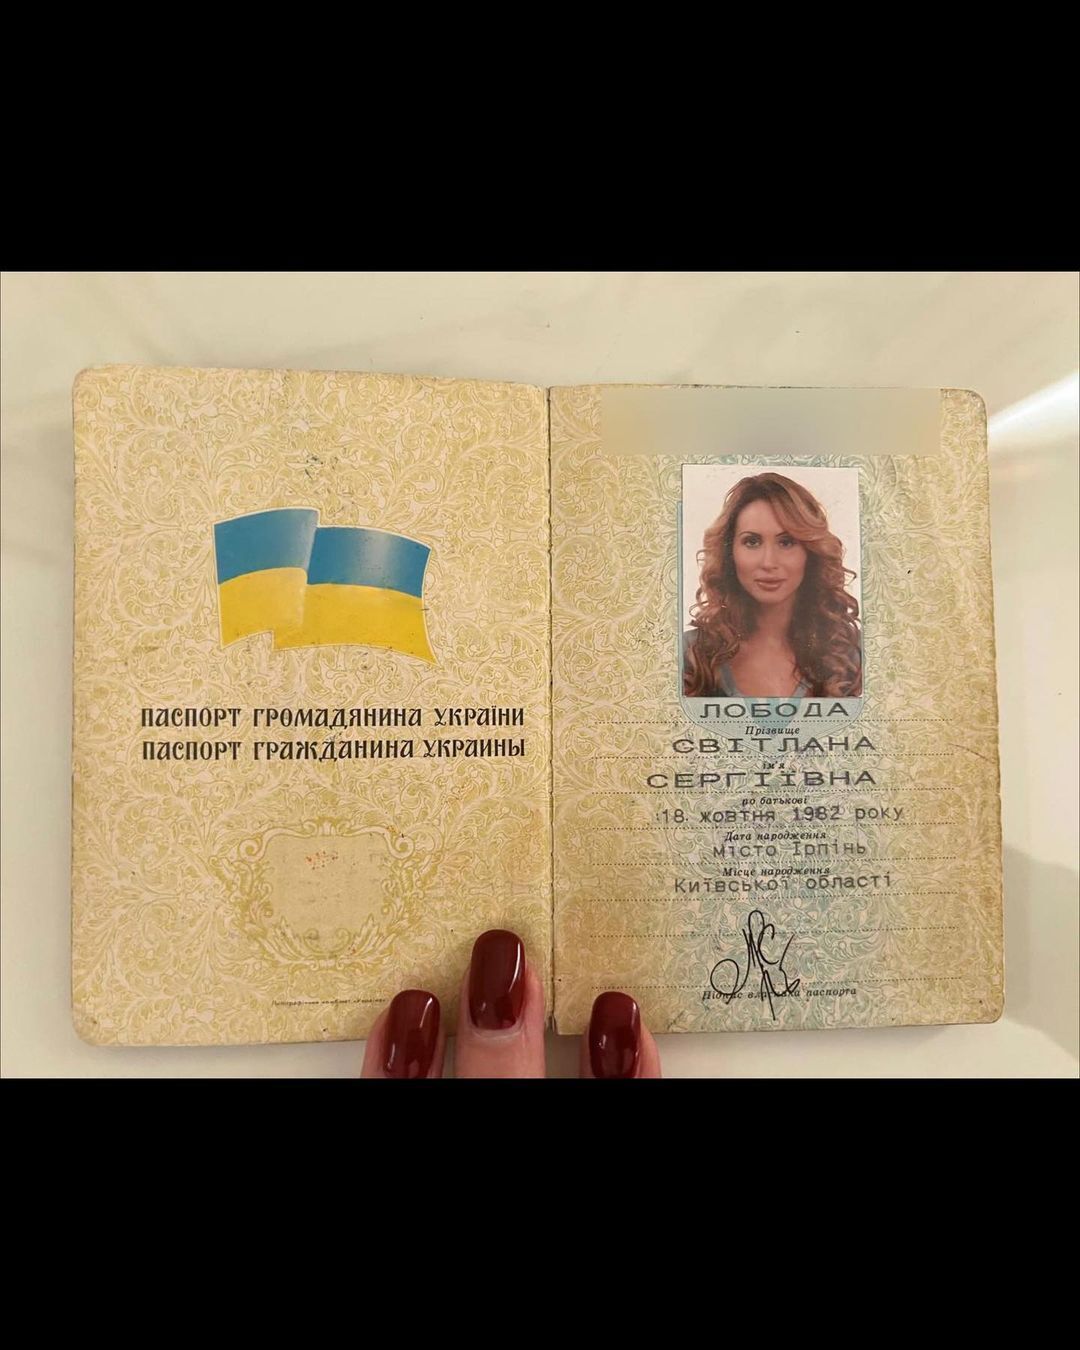 Лобода ответила на слухи о смене гражданства и показала свой паспорт: я живу среди Настоящих Героев